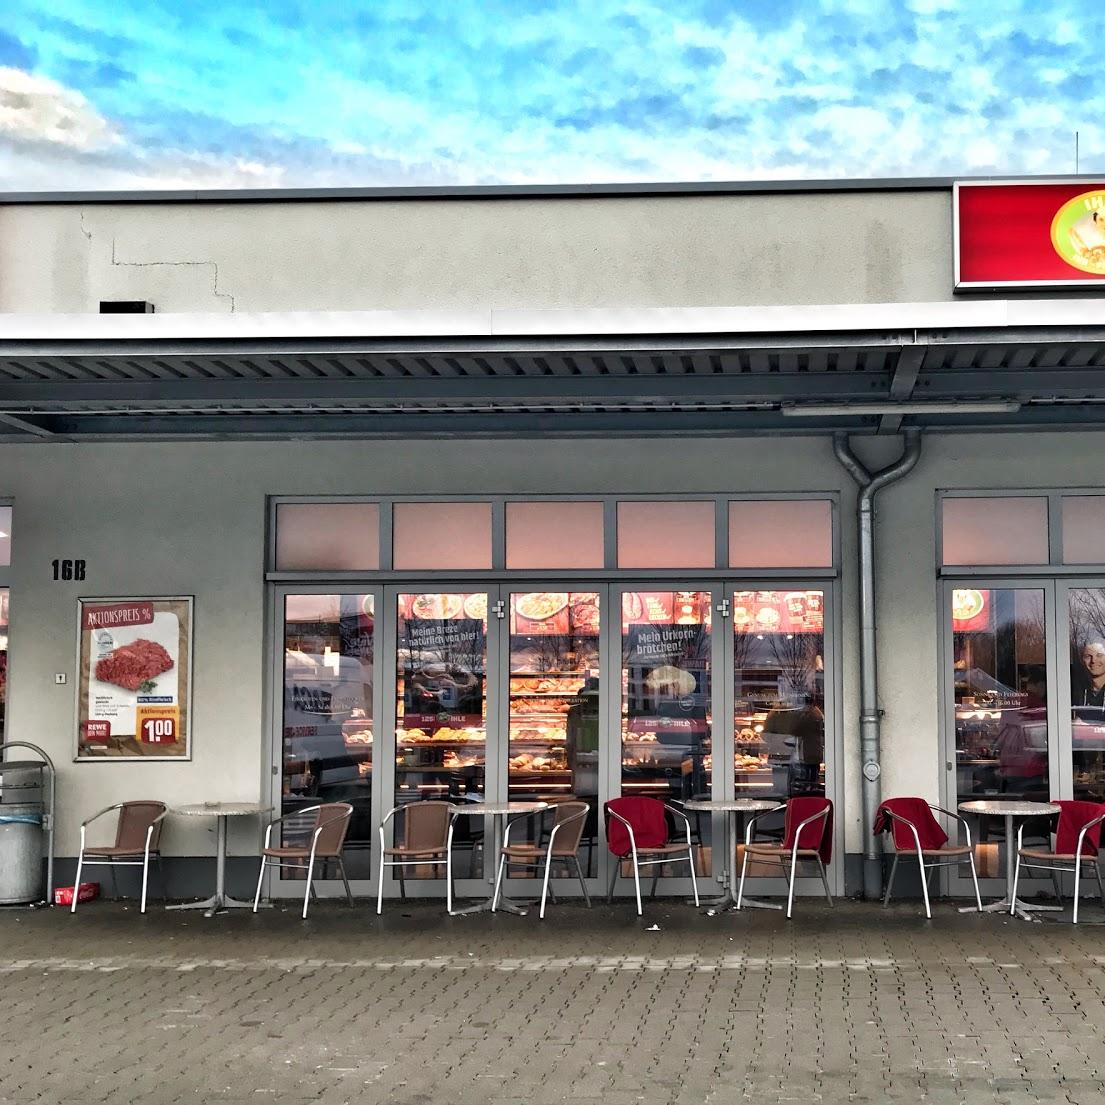 Restaurant "Ihle" in Feldkirchen